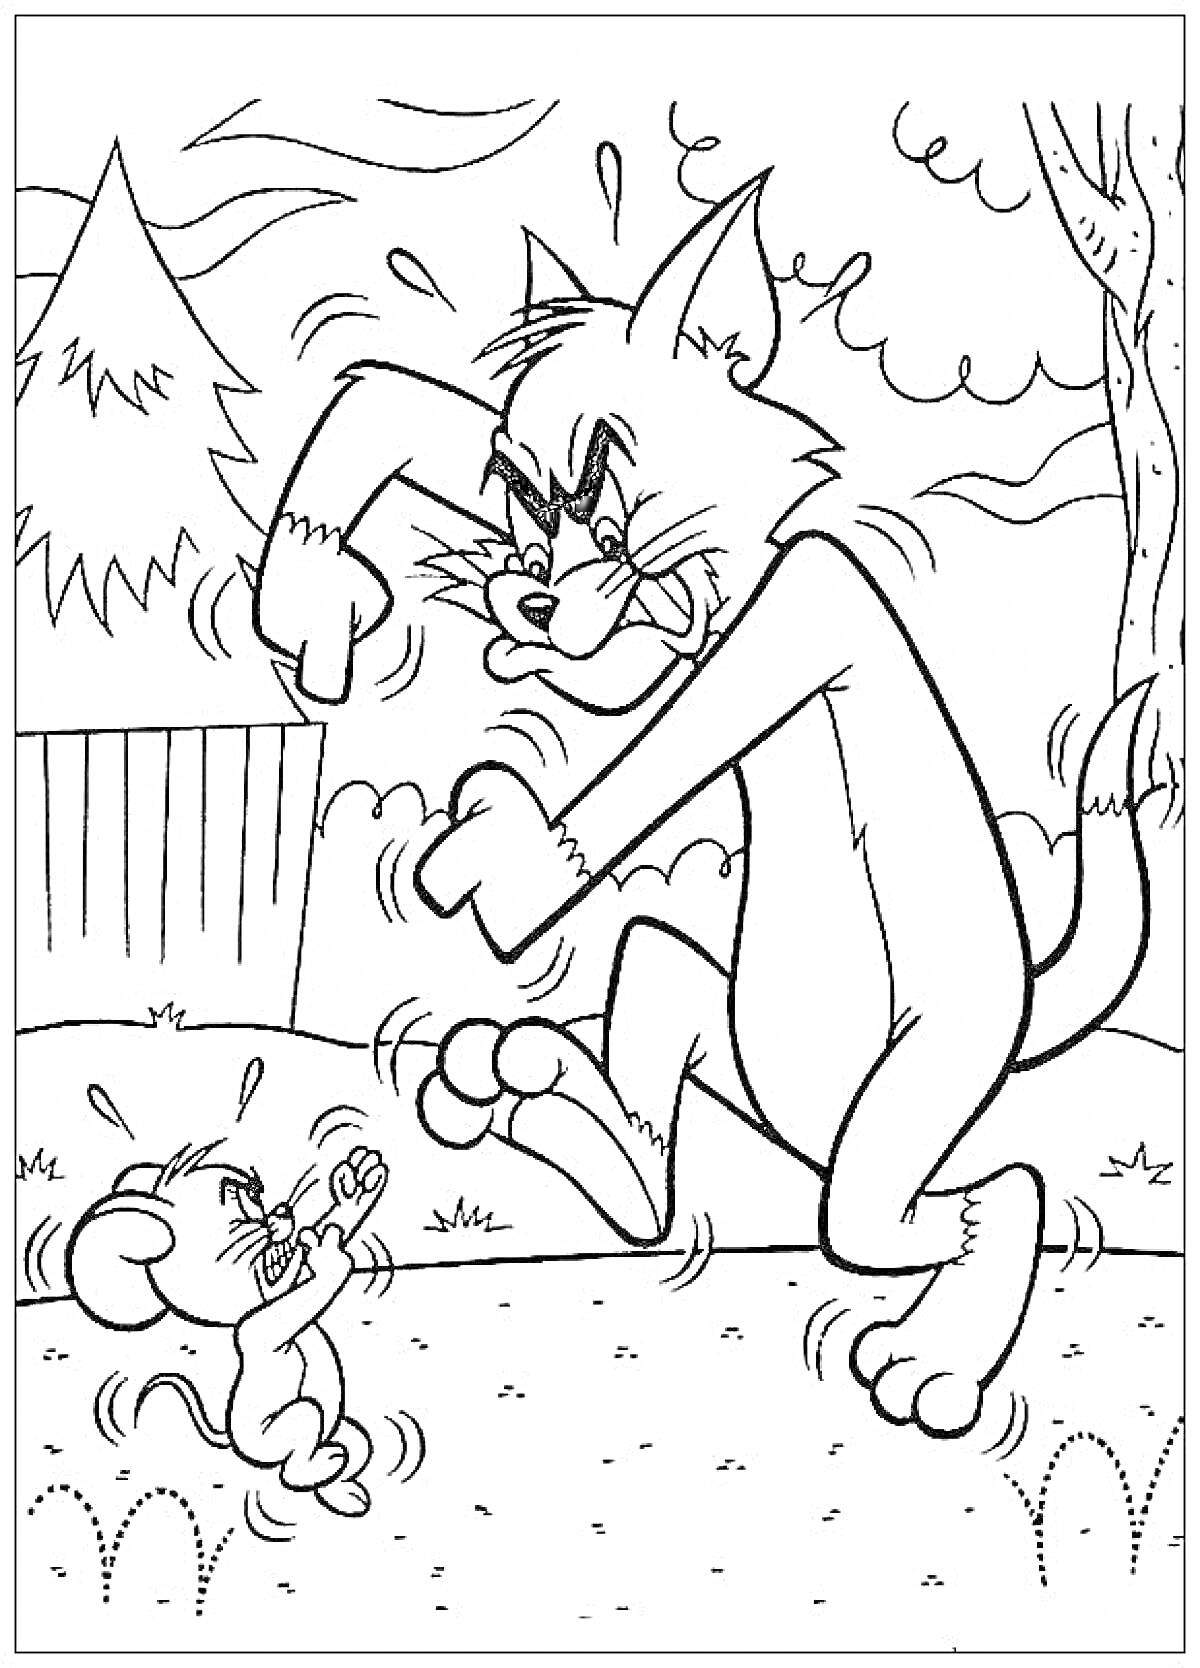 Том и Джерри - Том пугает Джерри на улице возле забора и деревьев